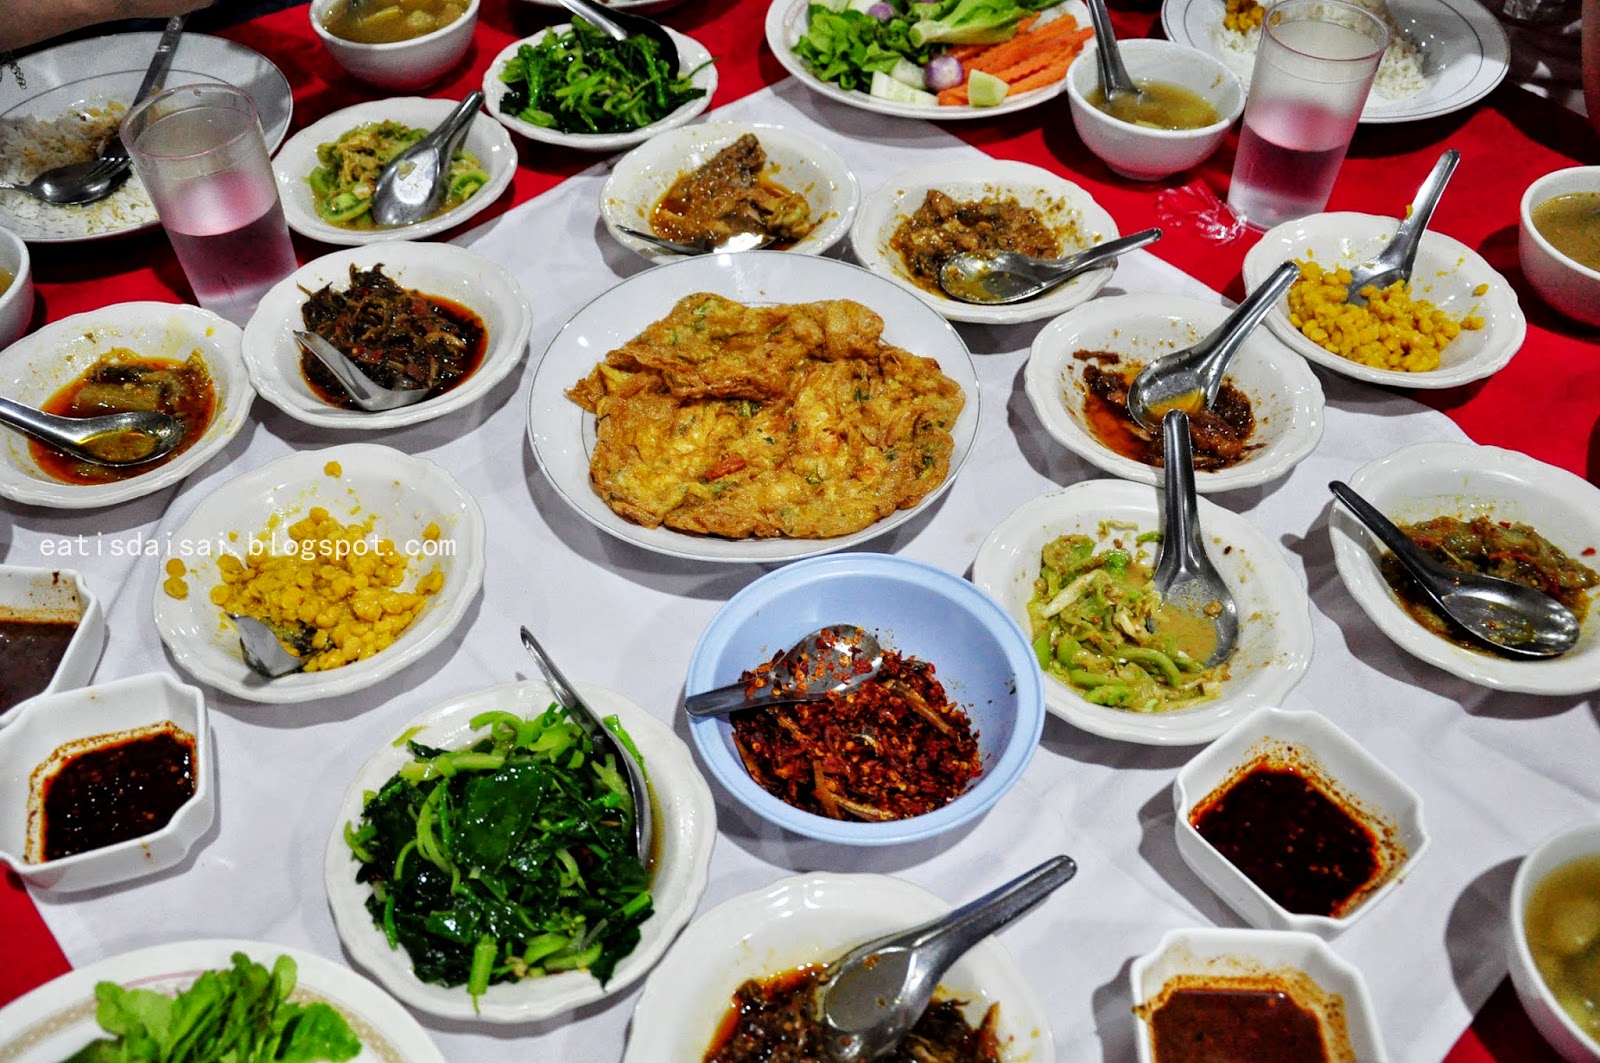 在桌上的缅甸食物 库存图片. 图片 包括有 正餐, 聚会所, 缓和, 食物, 的协助, 餐馆, 缅甸, 新鲜 - 43971425